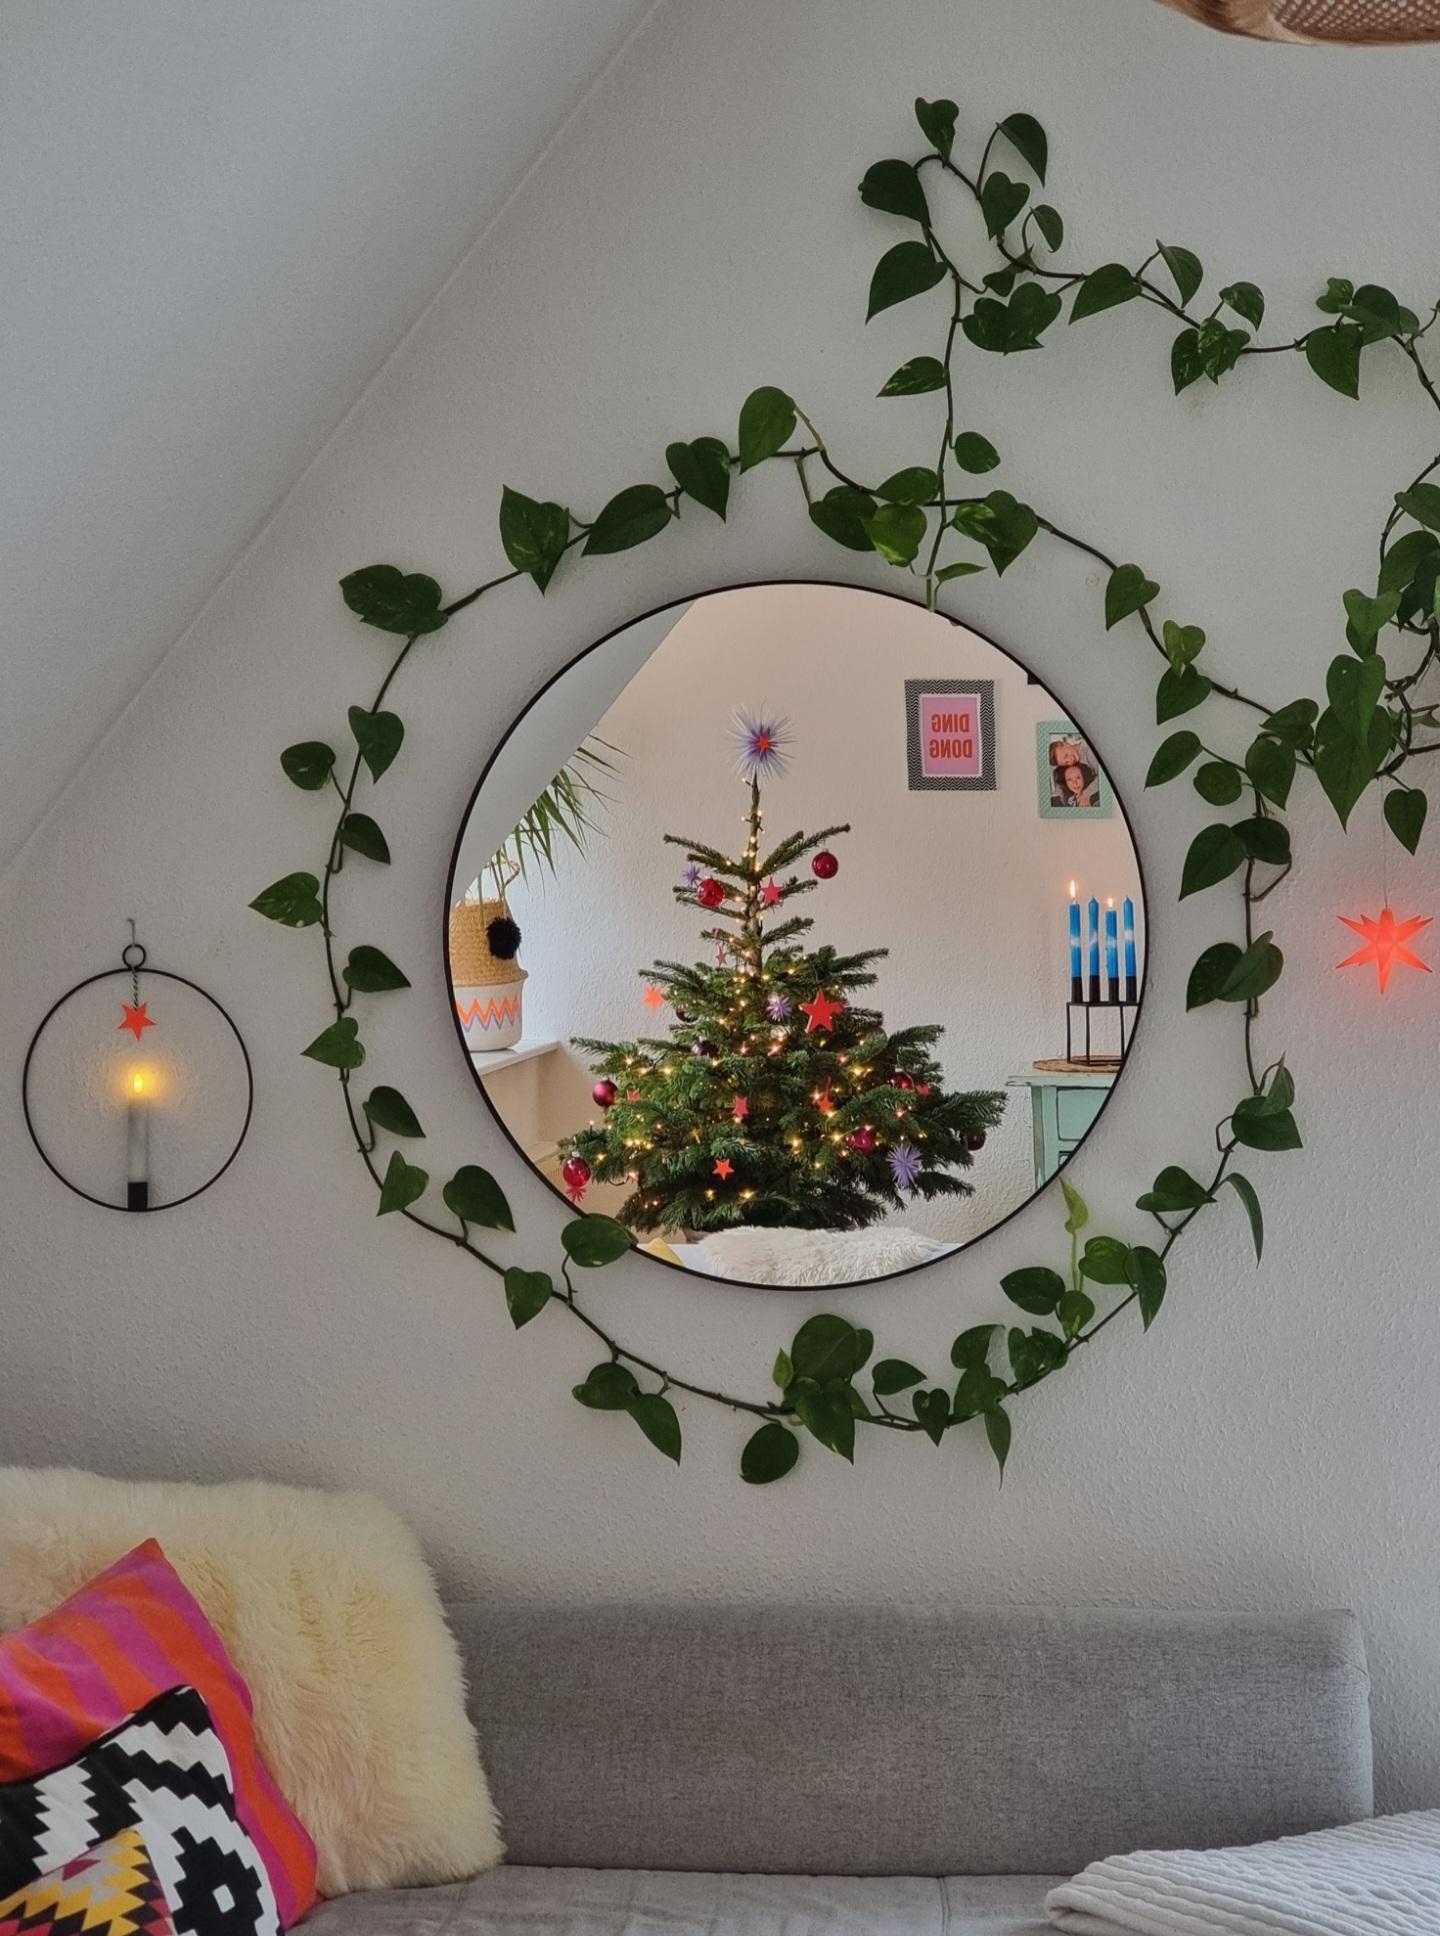 Das #Wohnzimmer im #Lichterglanz #Weihnachtsbaum #Herrnhuterstern #Kerzenlicht #colorful #Weihnachtsdeko #Hygge #Weihnachten kann kommen 💫